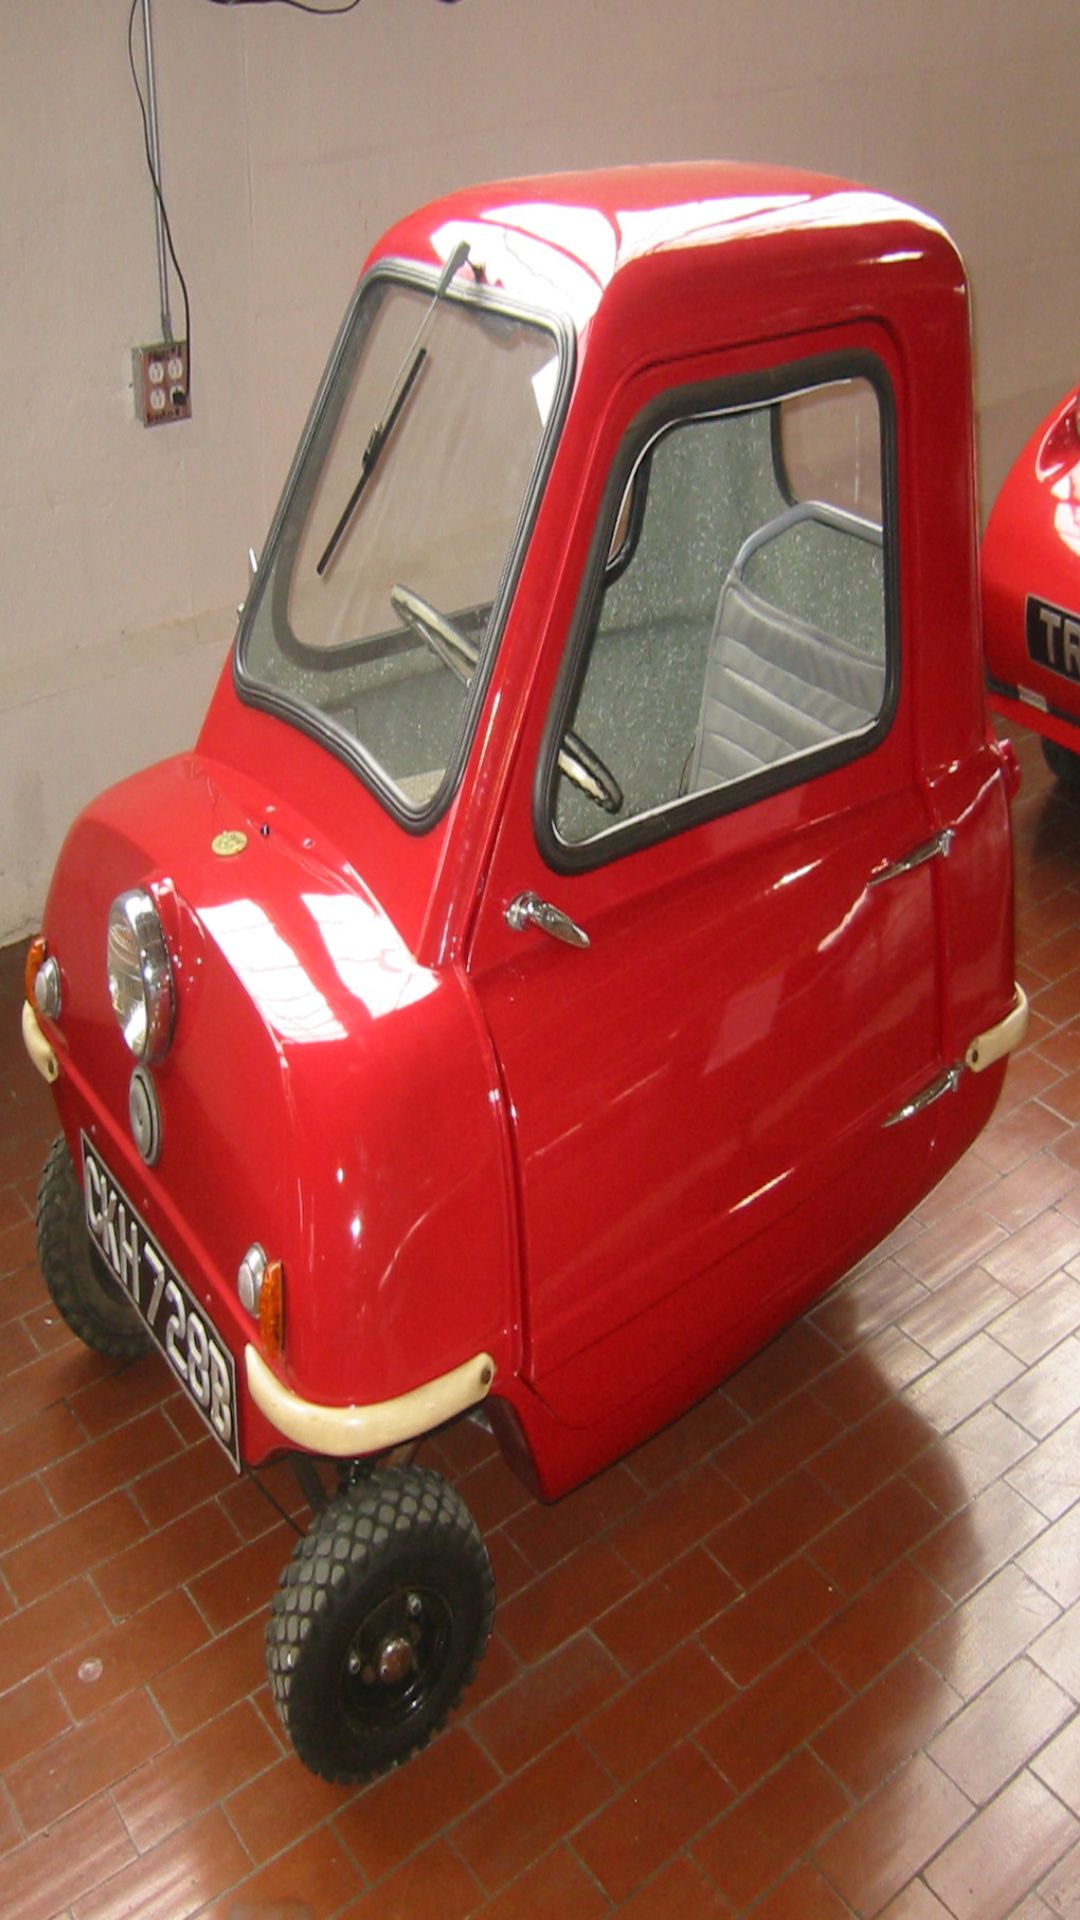 ये कोई खिलौना नहीं बल्कि दुनिया की सबसे छोटी कार है